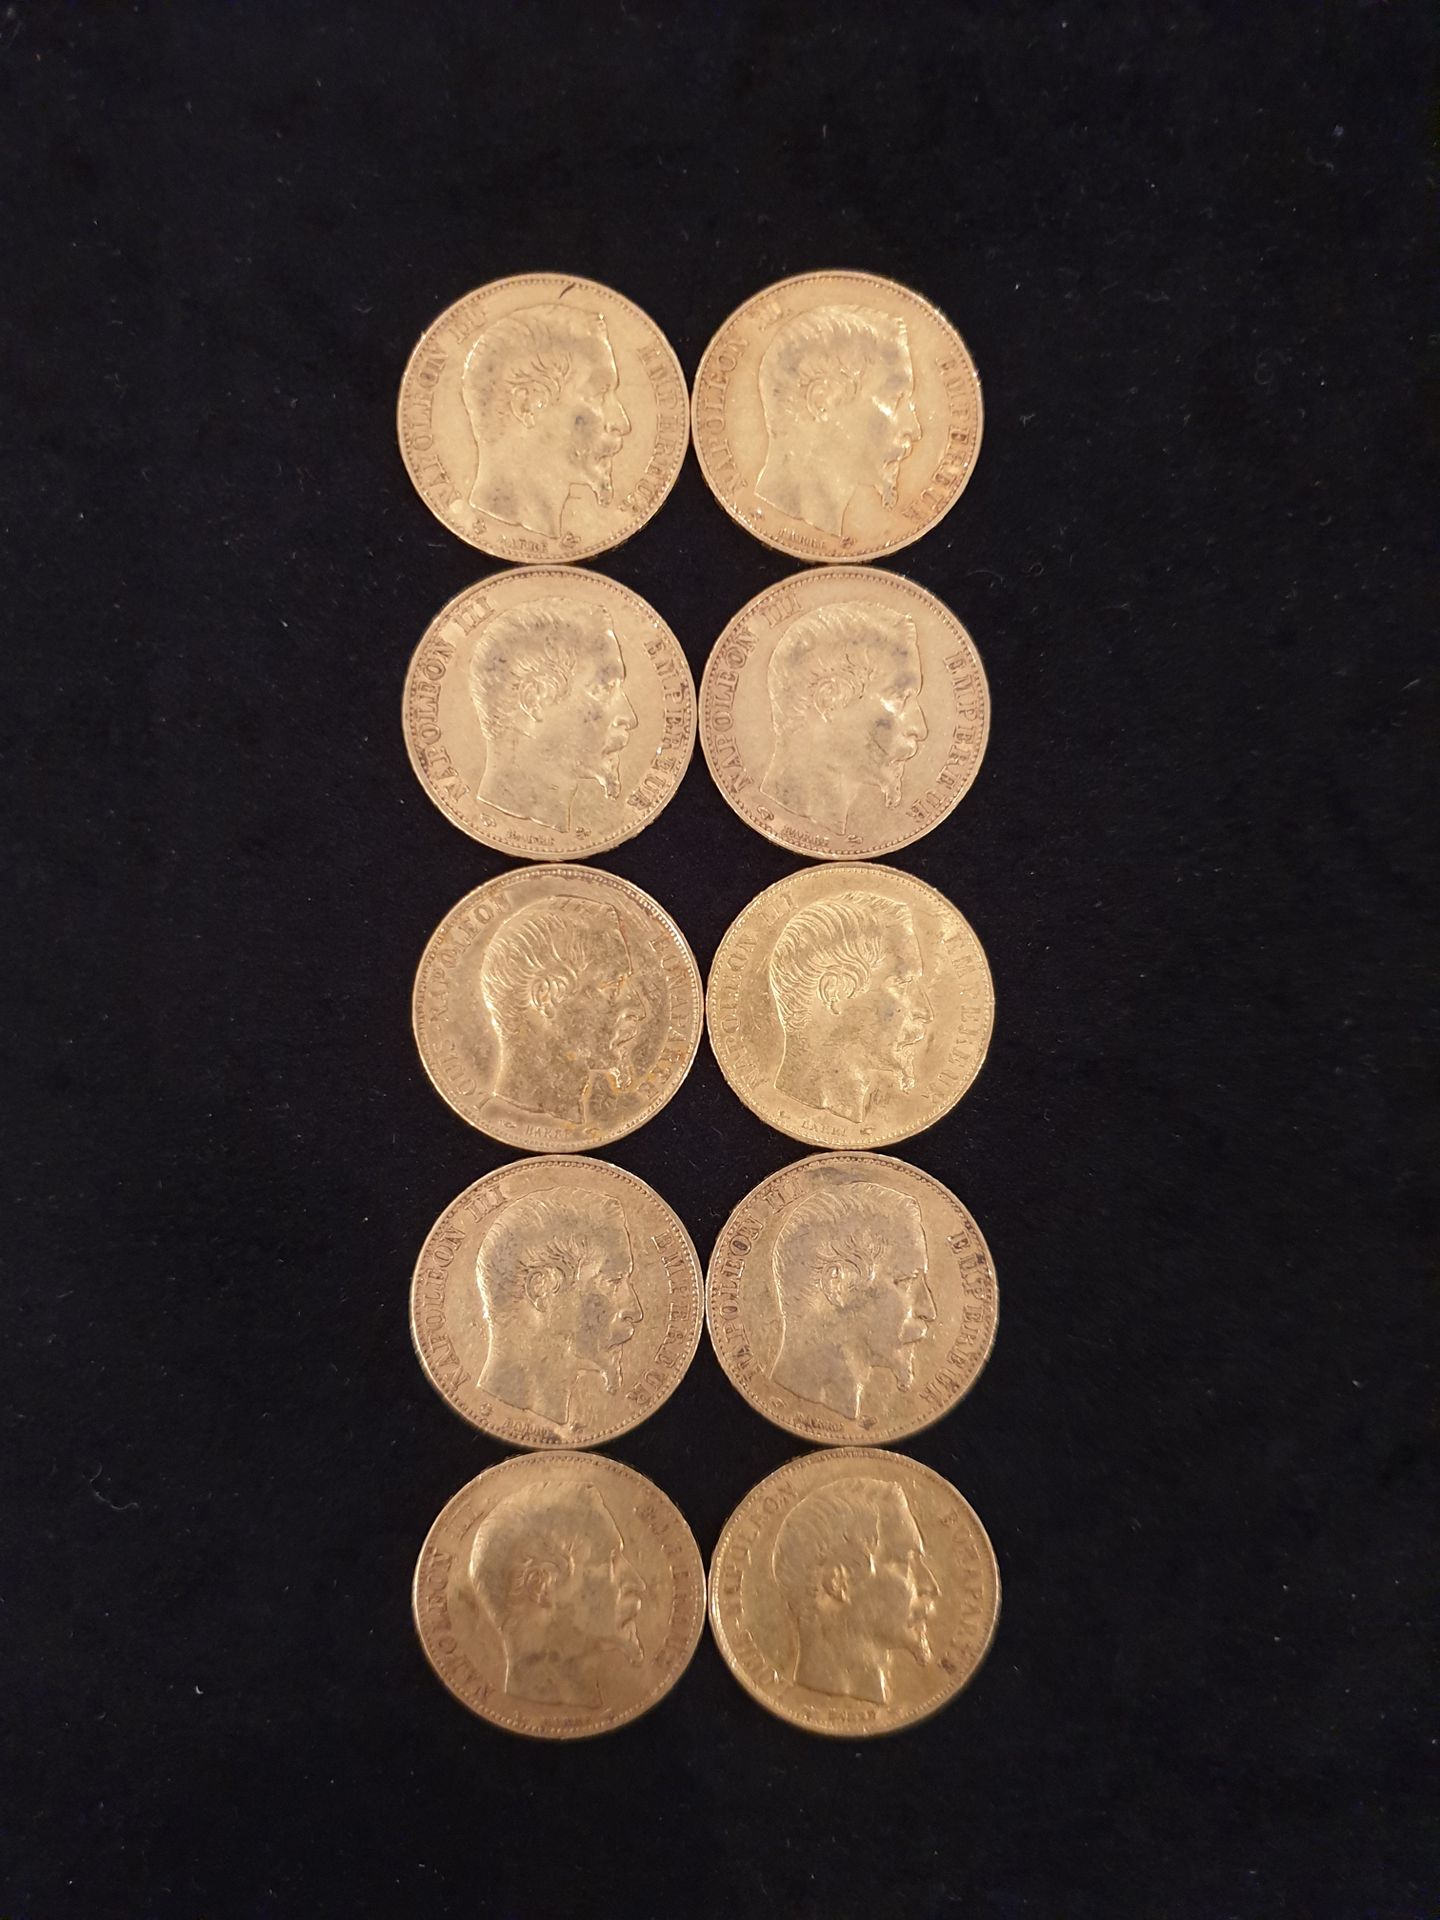 Null 10枚20法郎金币(900)拿破仑三世光头
1852年2枚-1854年2枚-1855年-1857年-1858年2枚-1859年2枚
1853年至186&hellip;